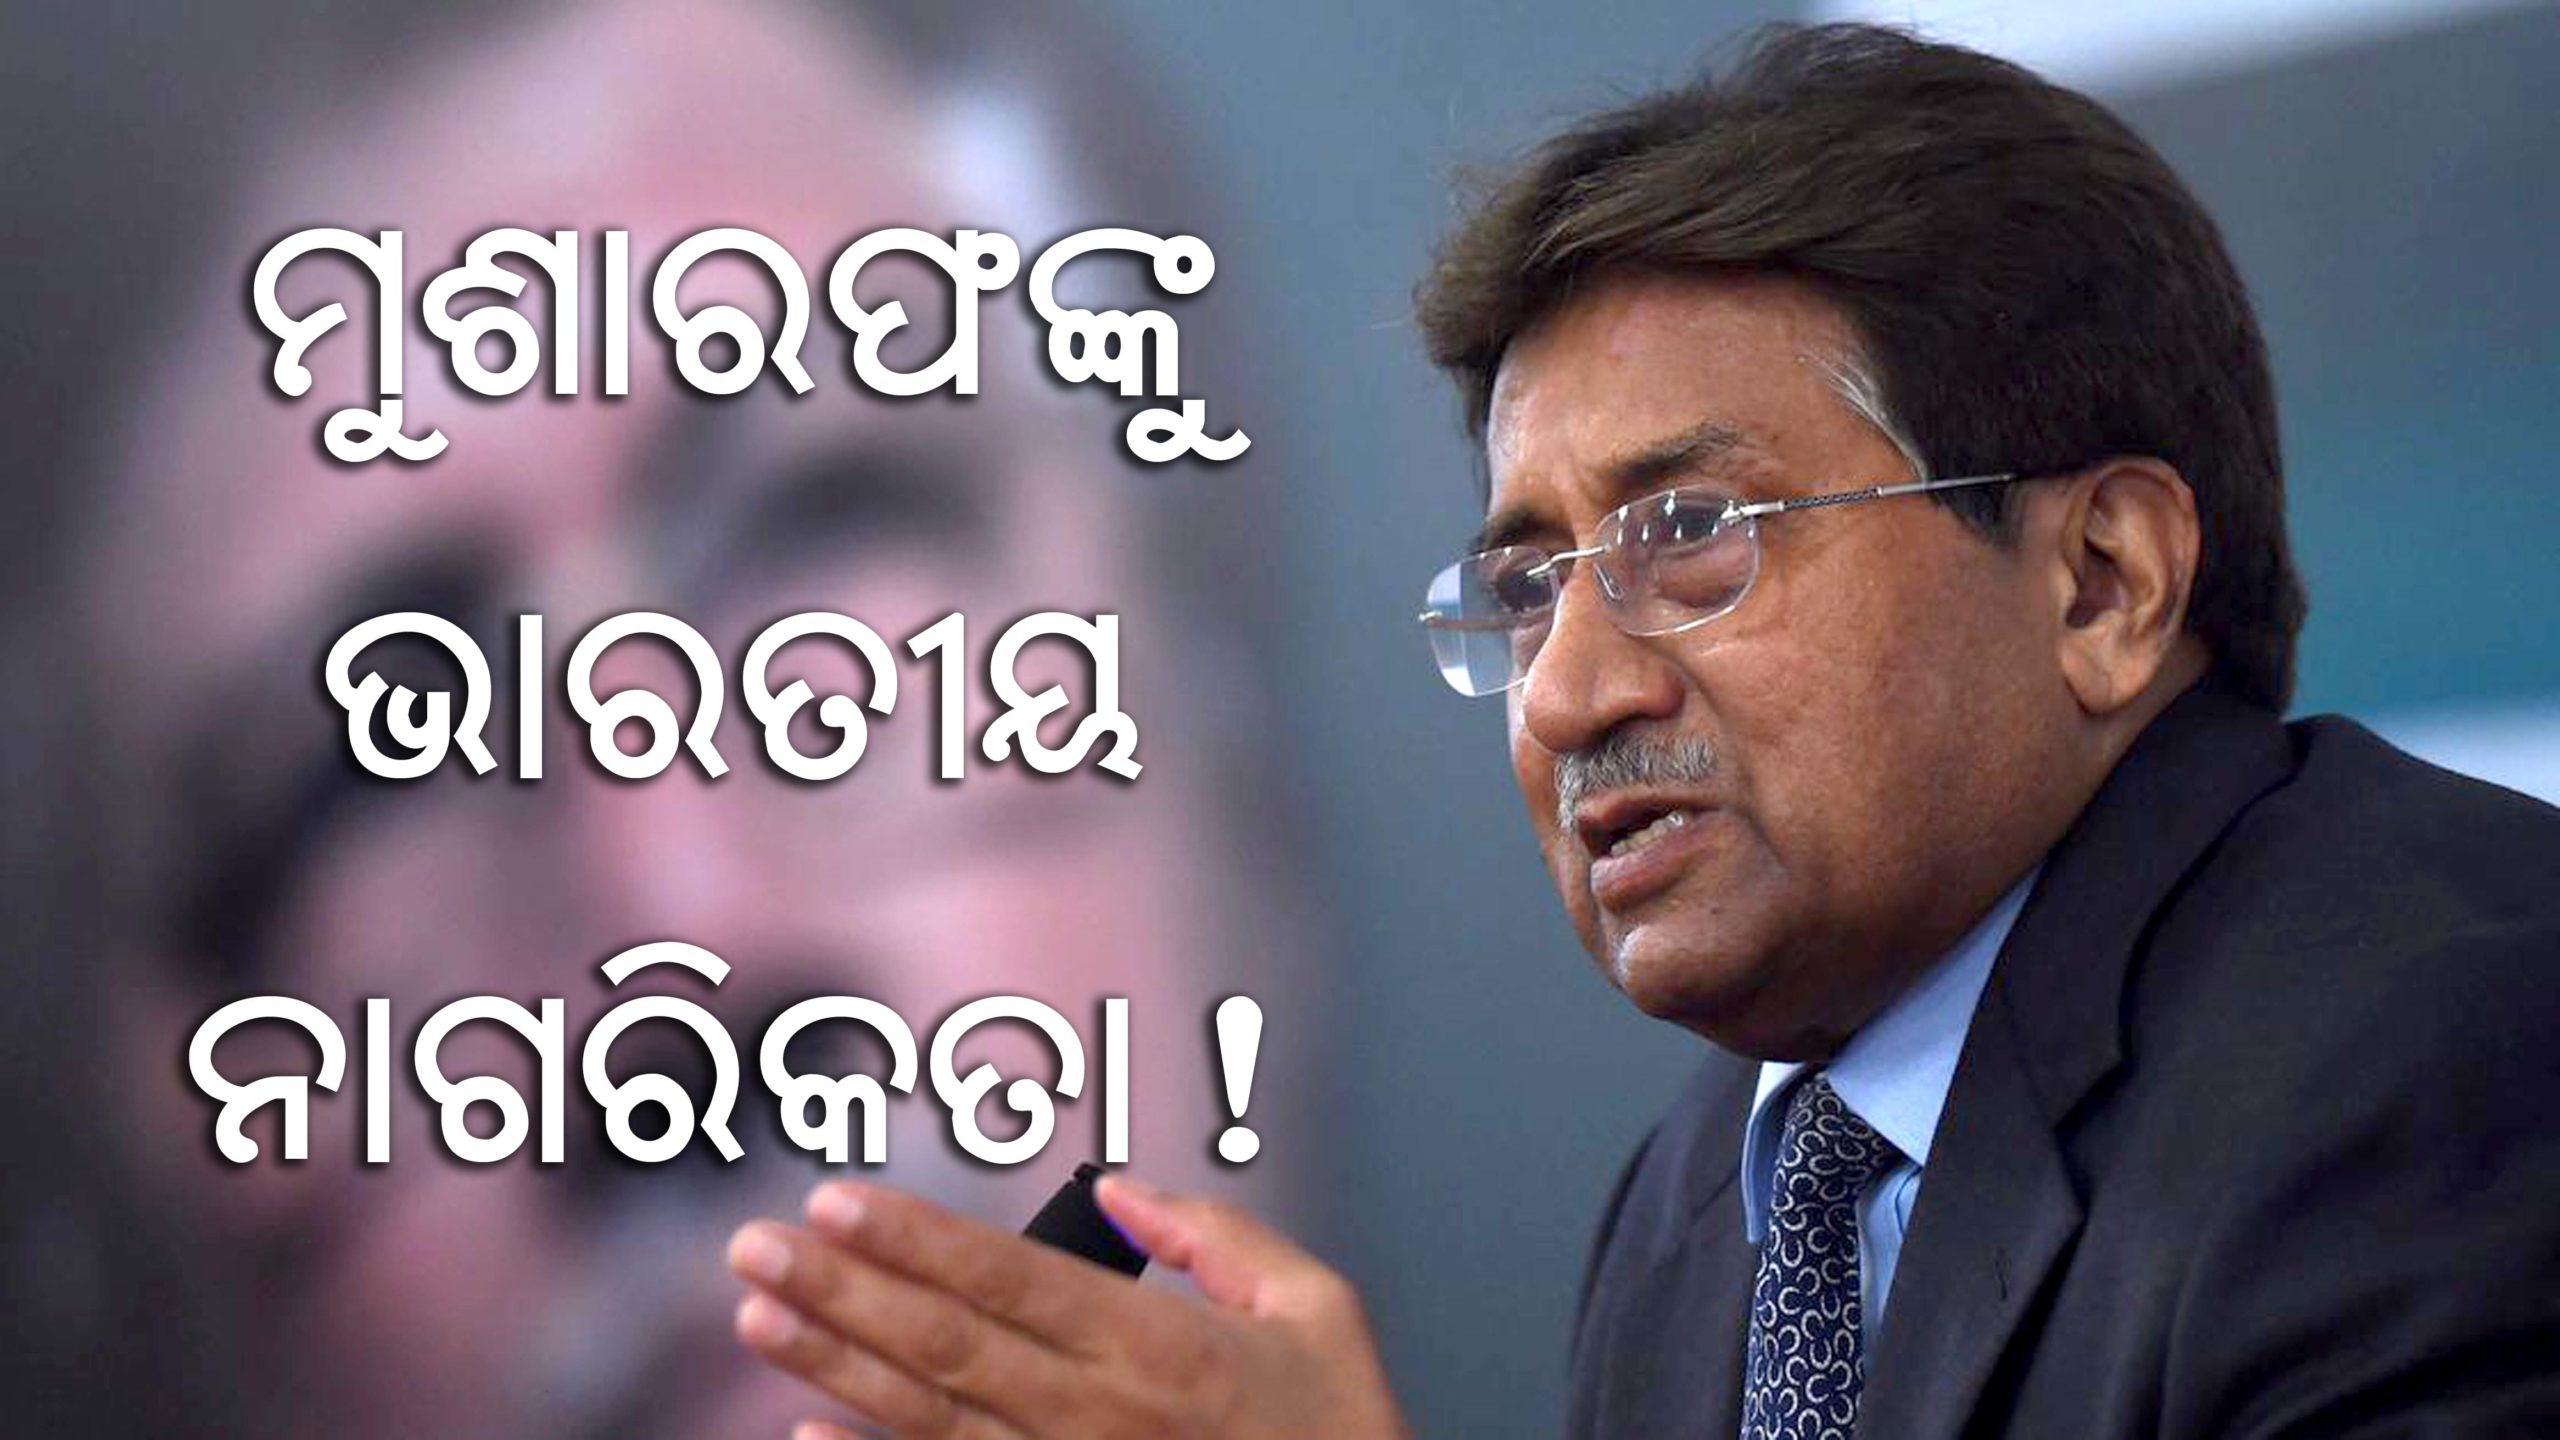 Indian Citizenship to Musharraf scaled